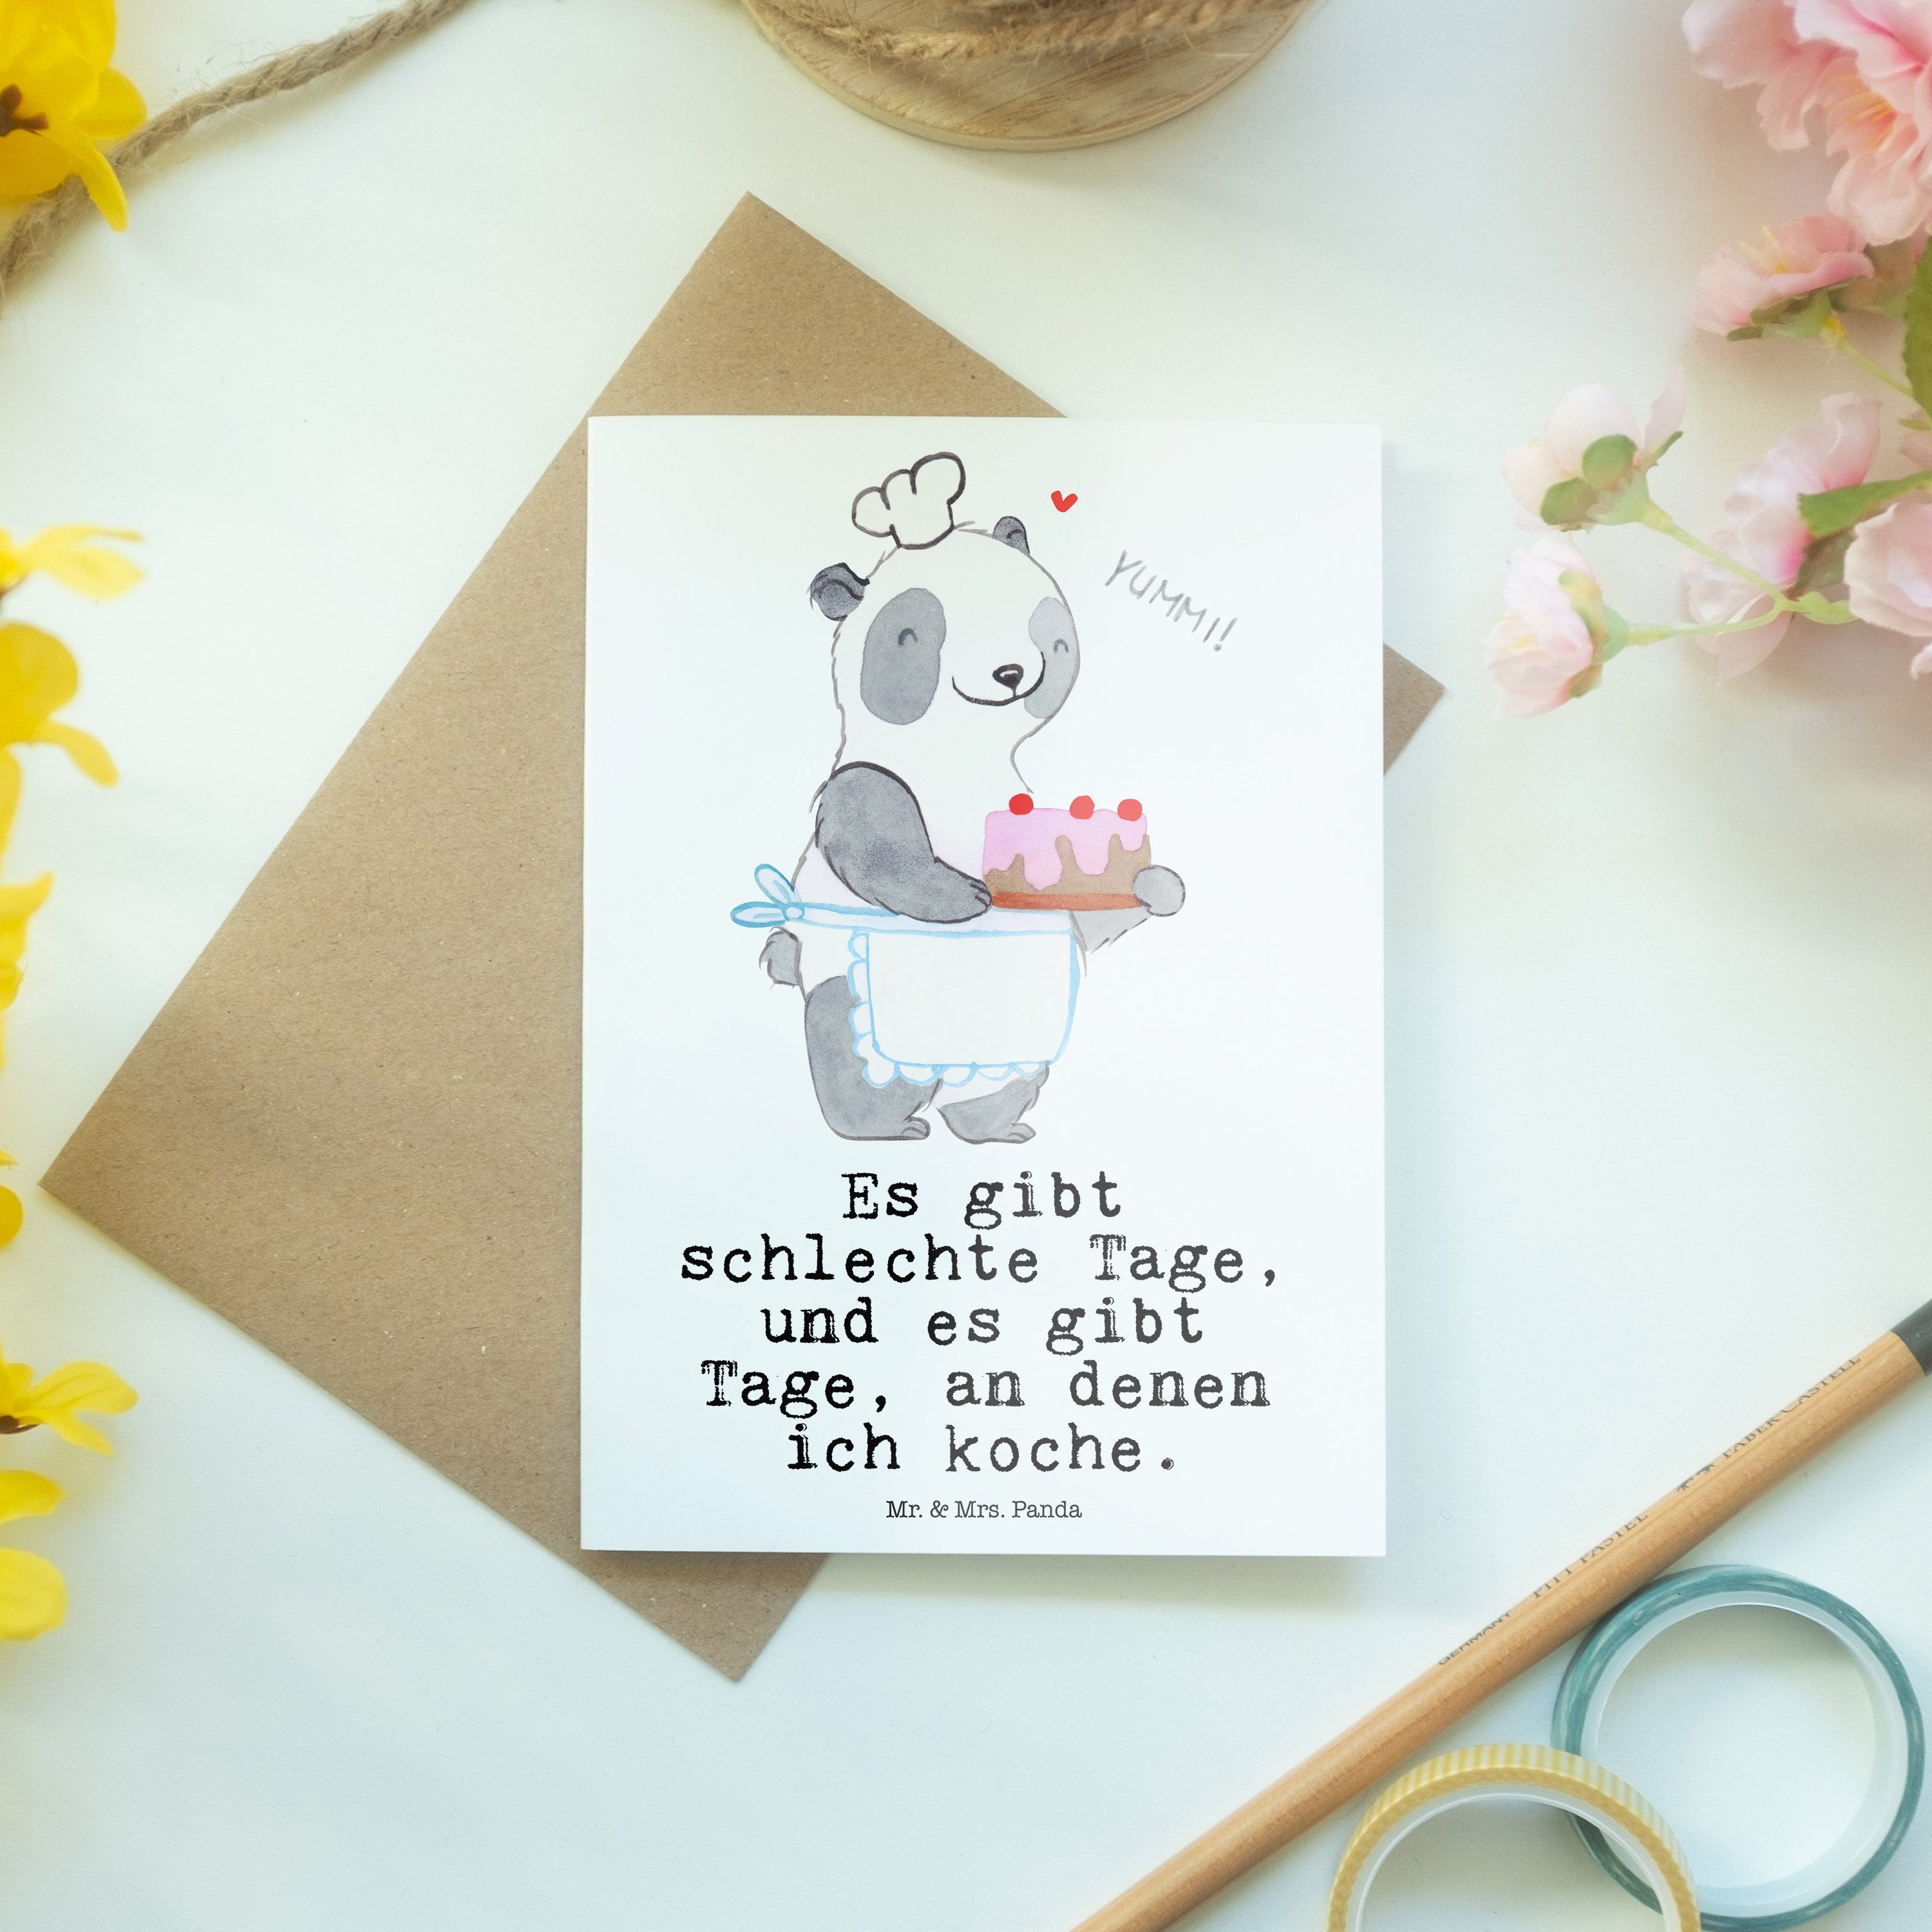 Mr. & Auszeichnung, Grußkarte Geschenk, Panda Mrs. - Kochen Tage Bär Sportler, Weiß Geburtstag 